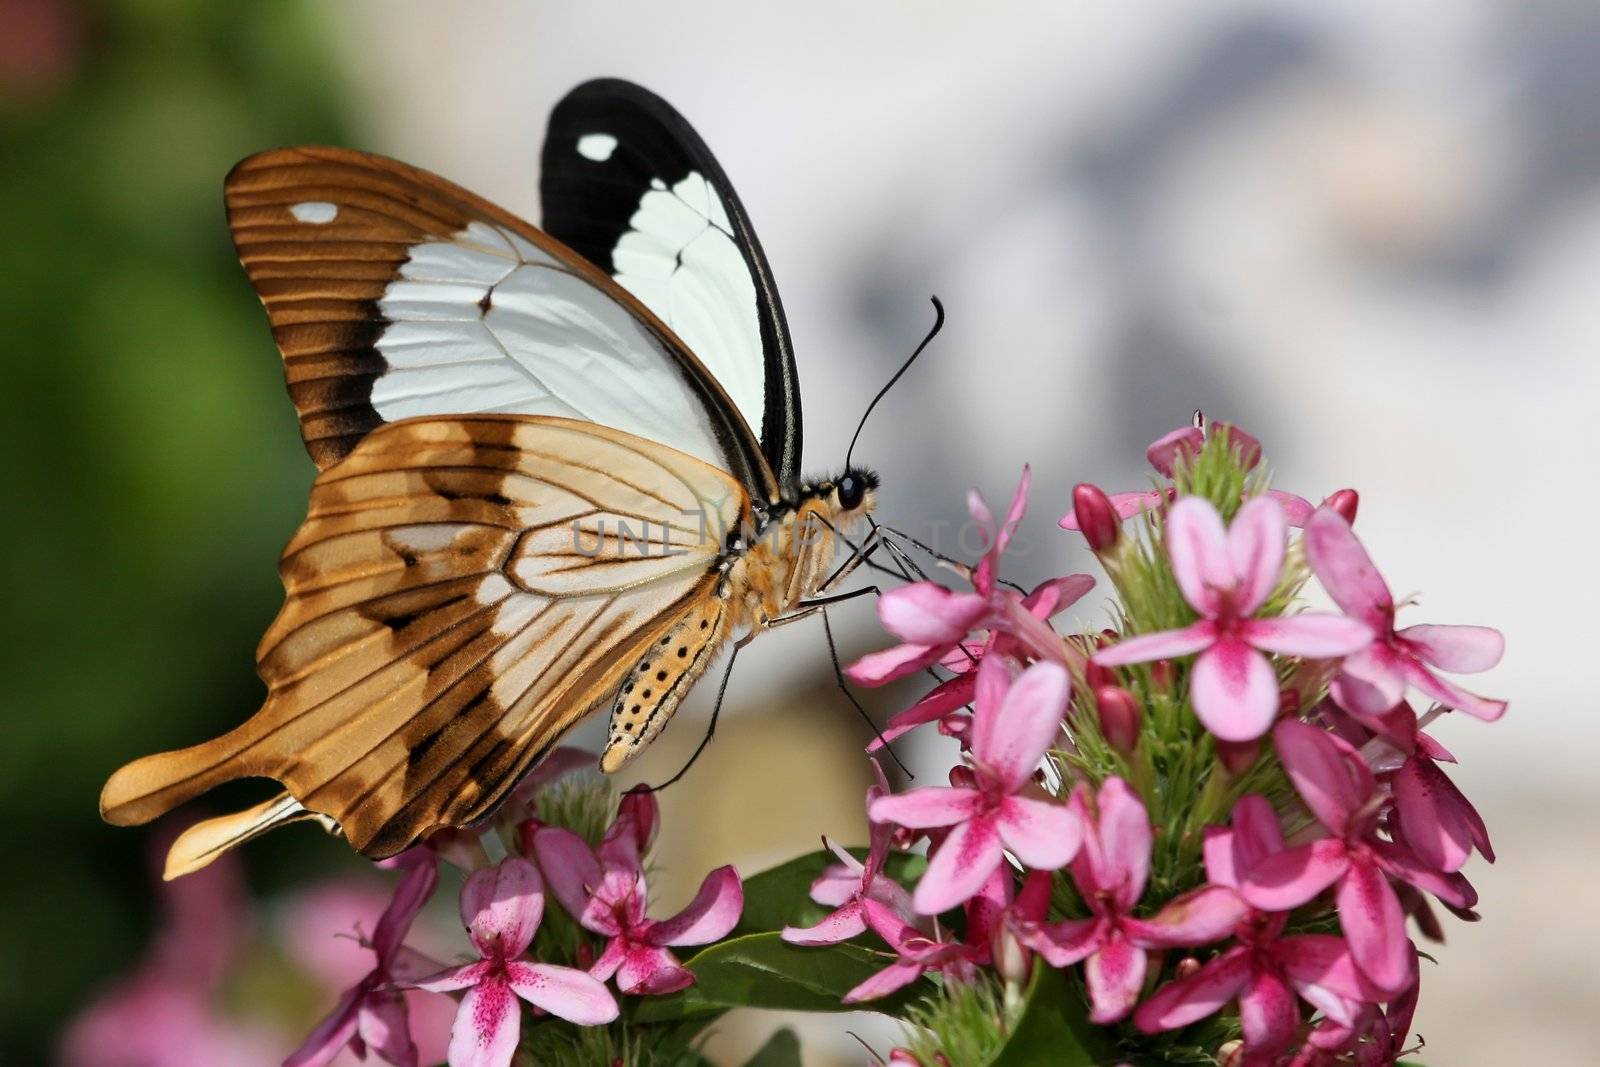 Swallowtail Butterfly Feeding by fouroaks